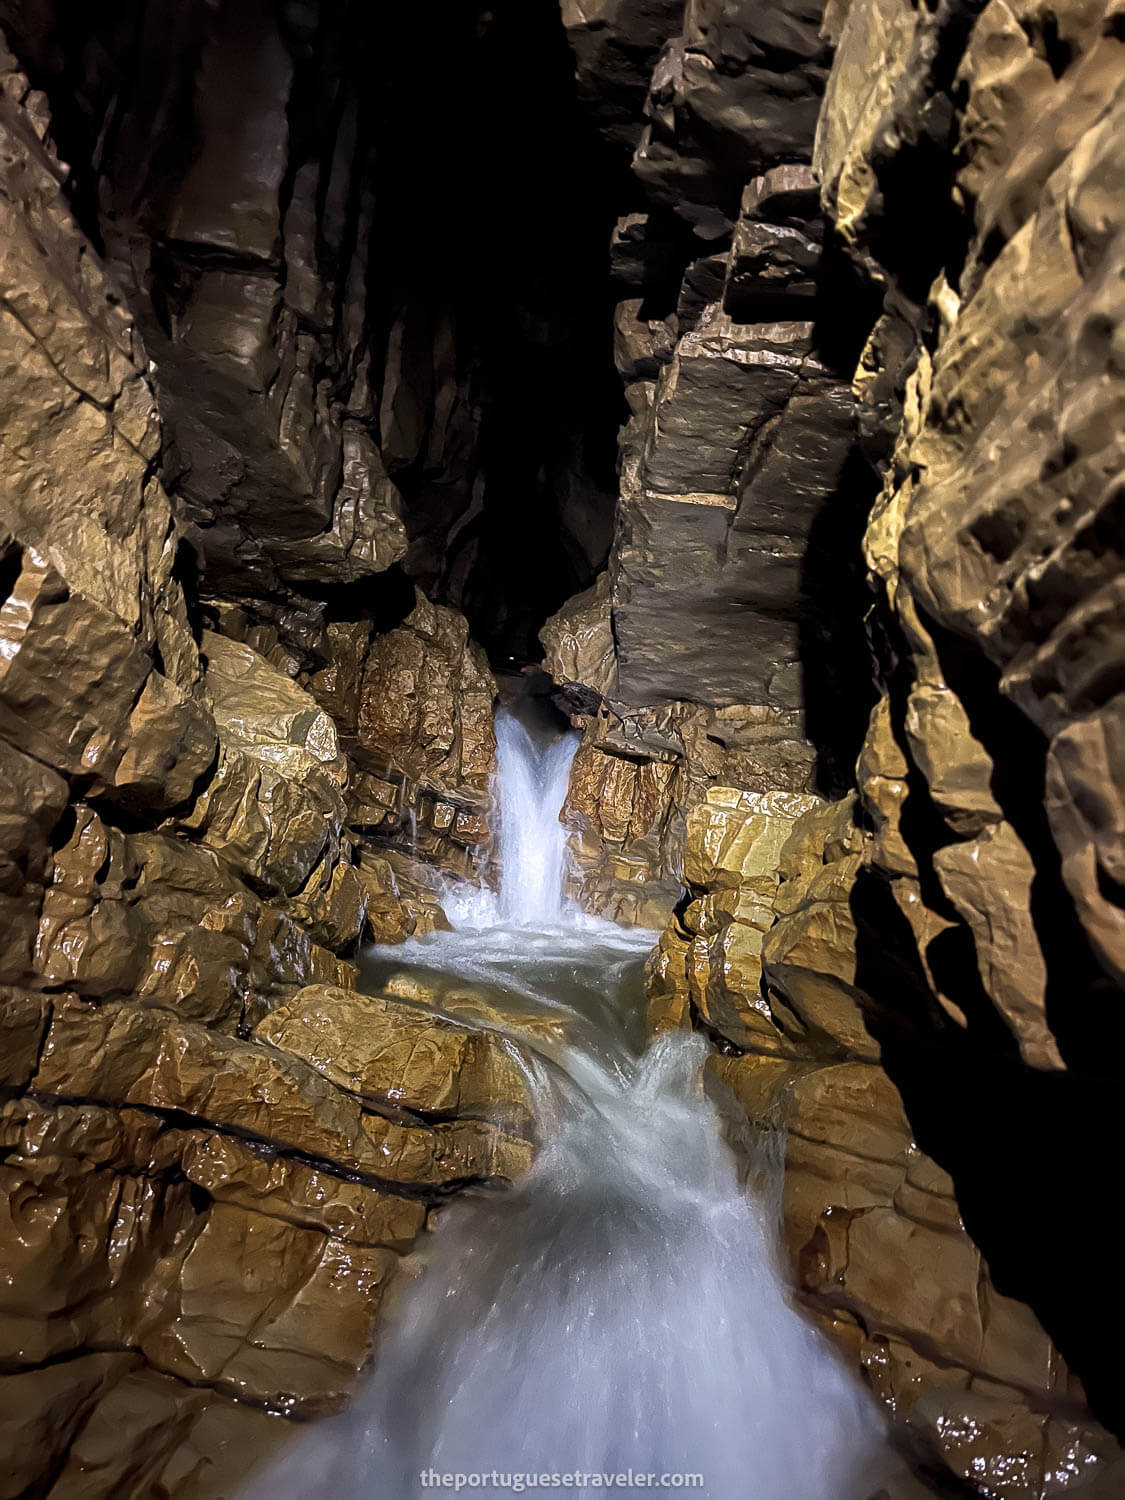 The waterfalls inside Cueva de Los Tayos